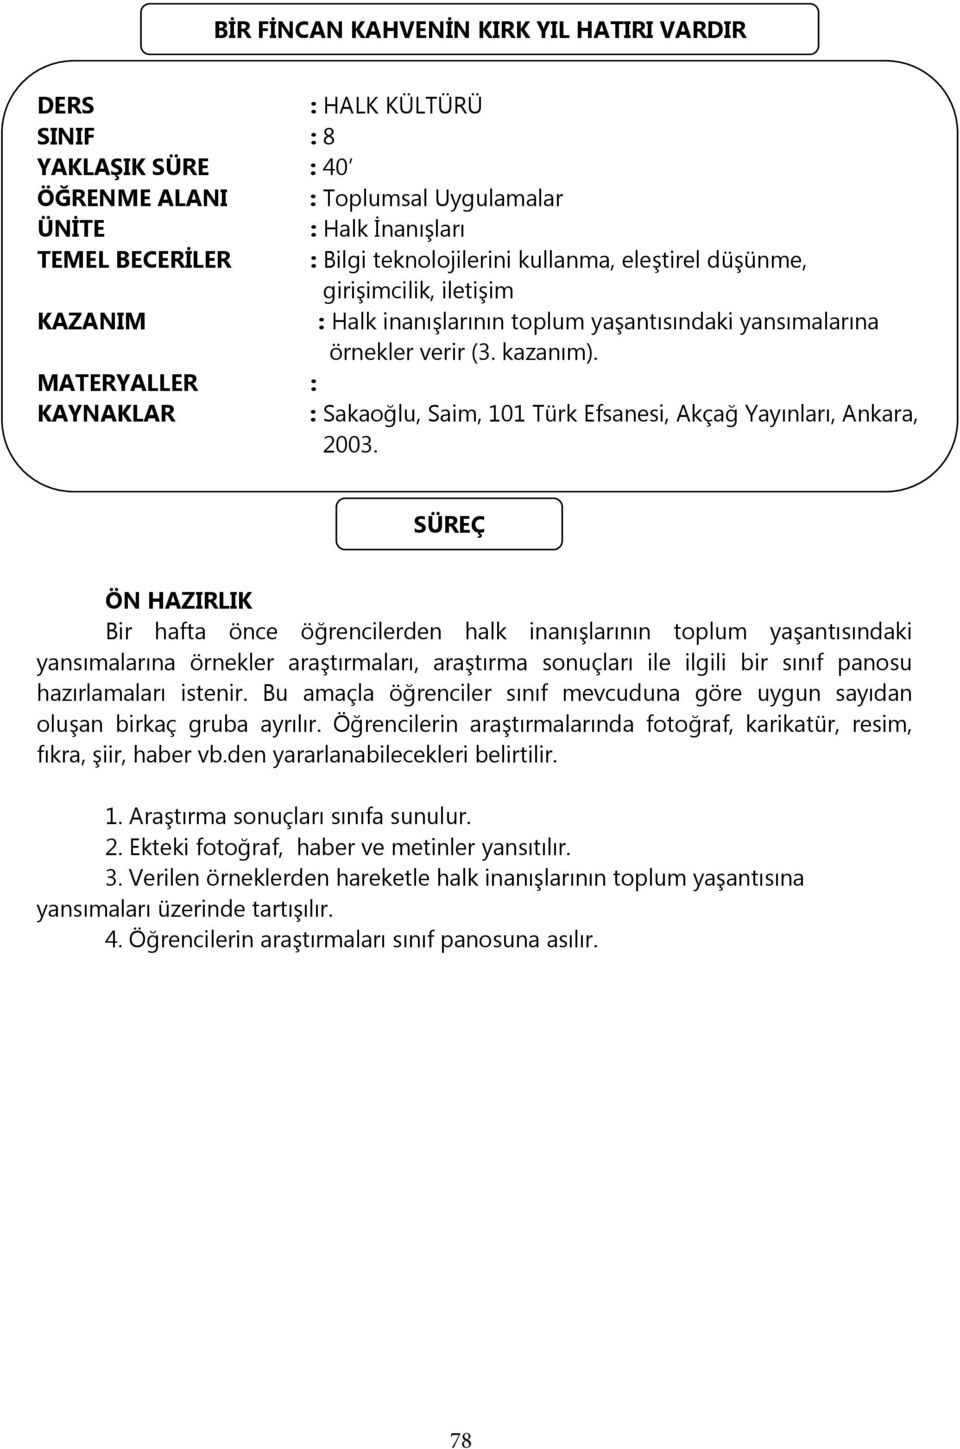 MATERYALLER : KAYNAKLAR : Sakaoğlu, Saim, 101 Türk Efsanesi, Akçağ Yayınları, Ankara, 2003.